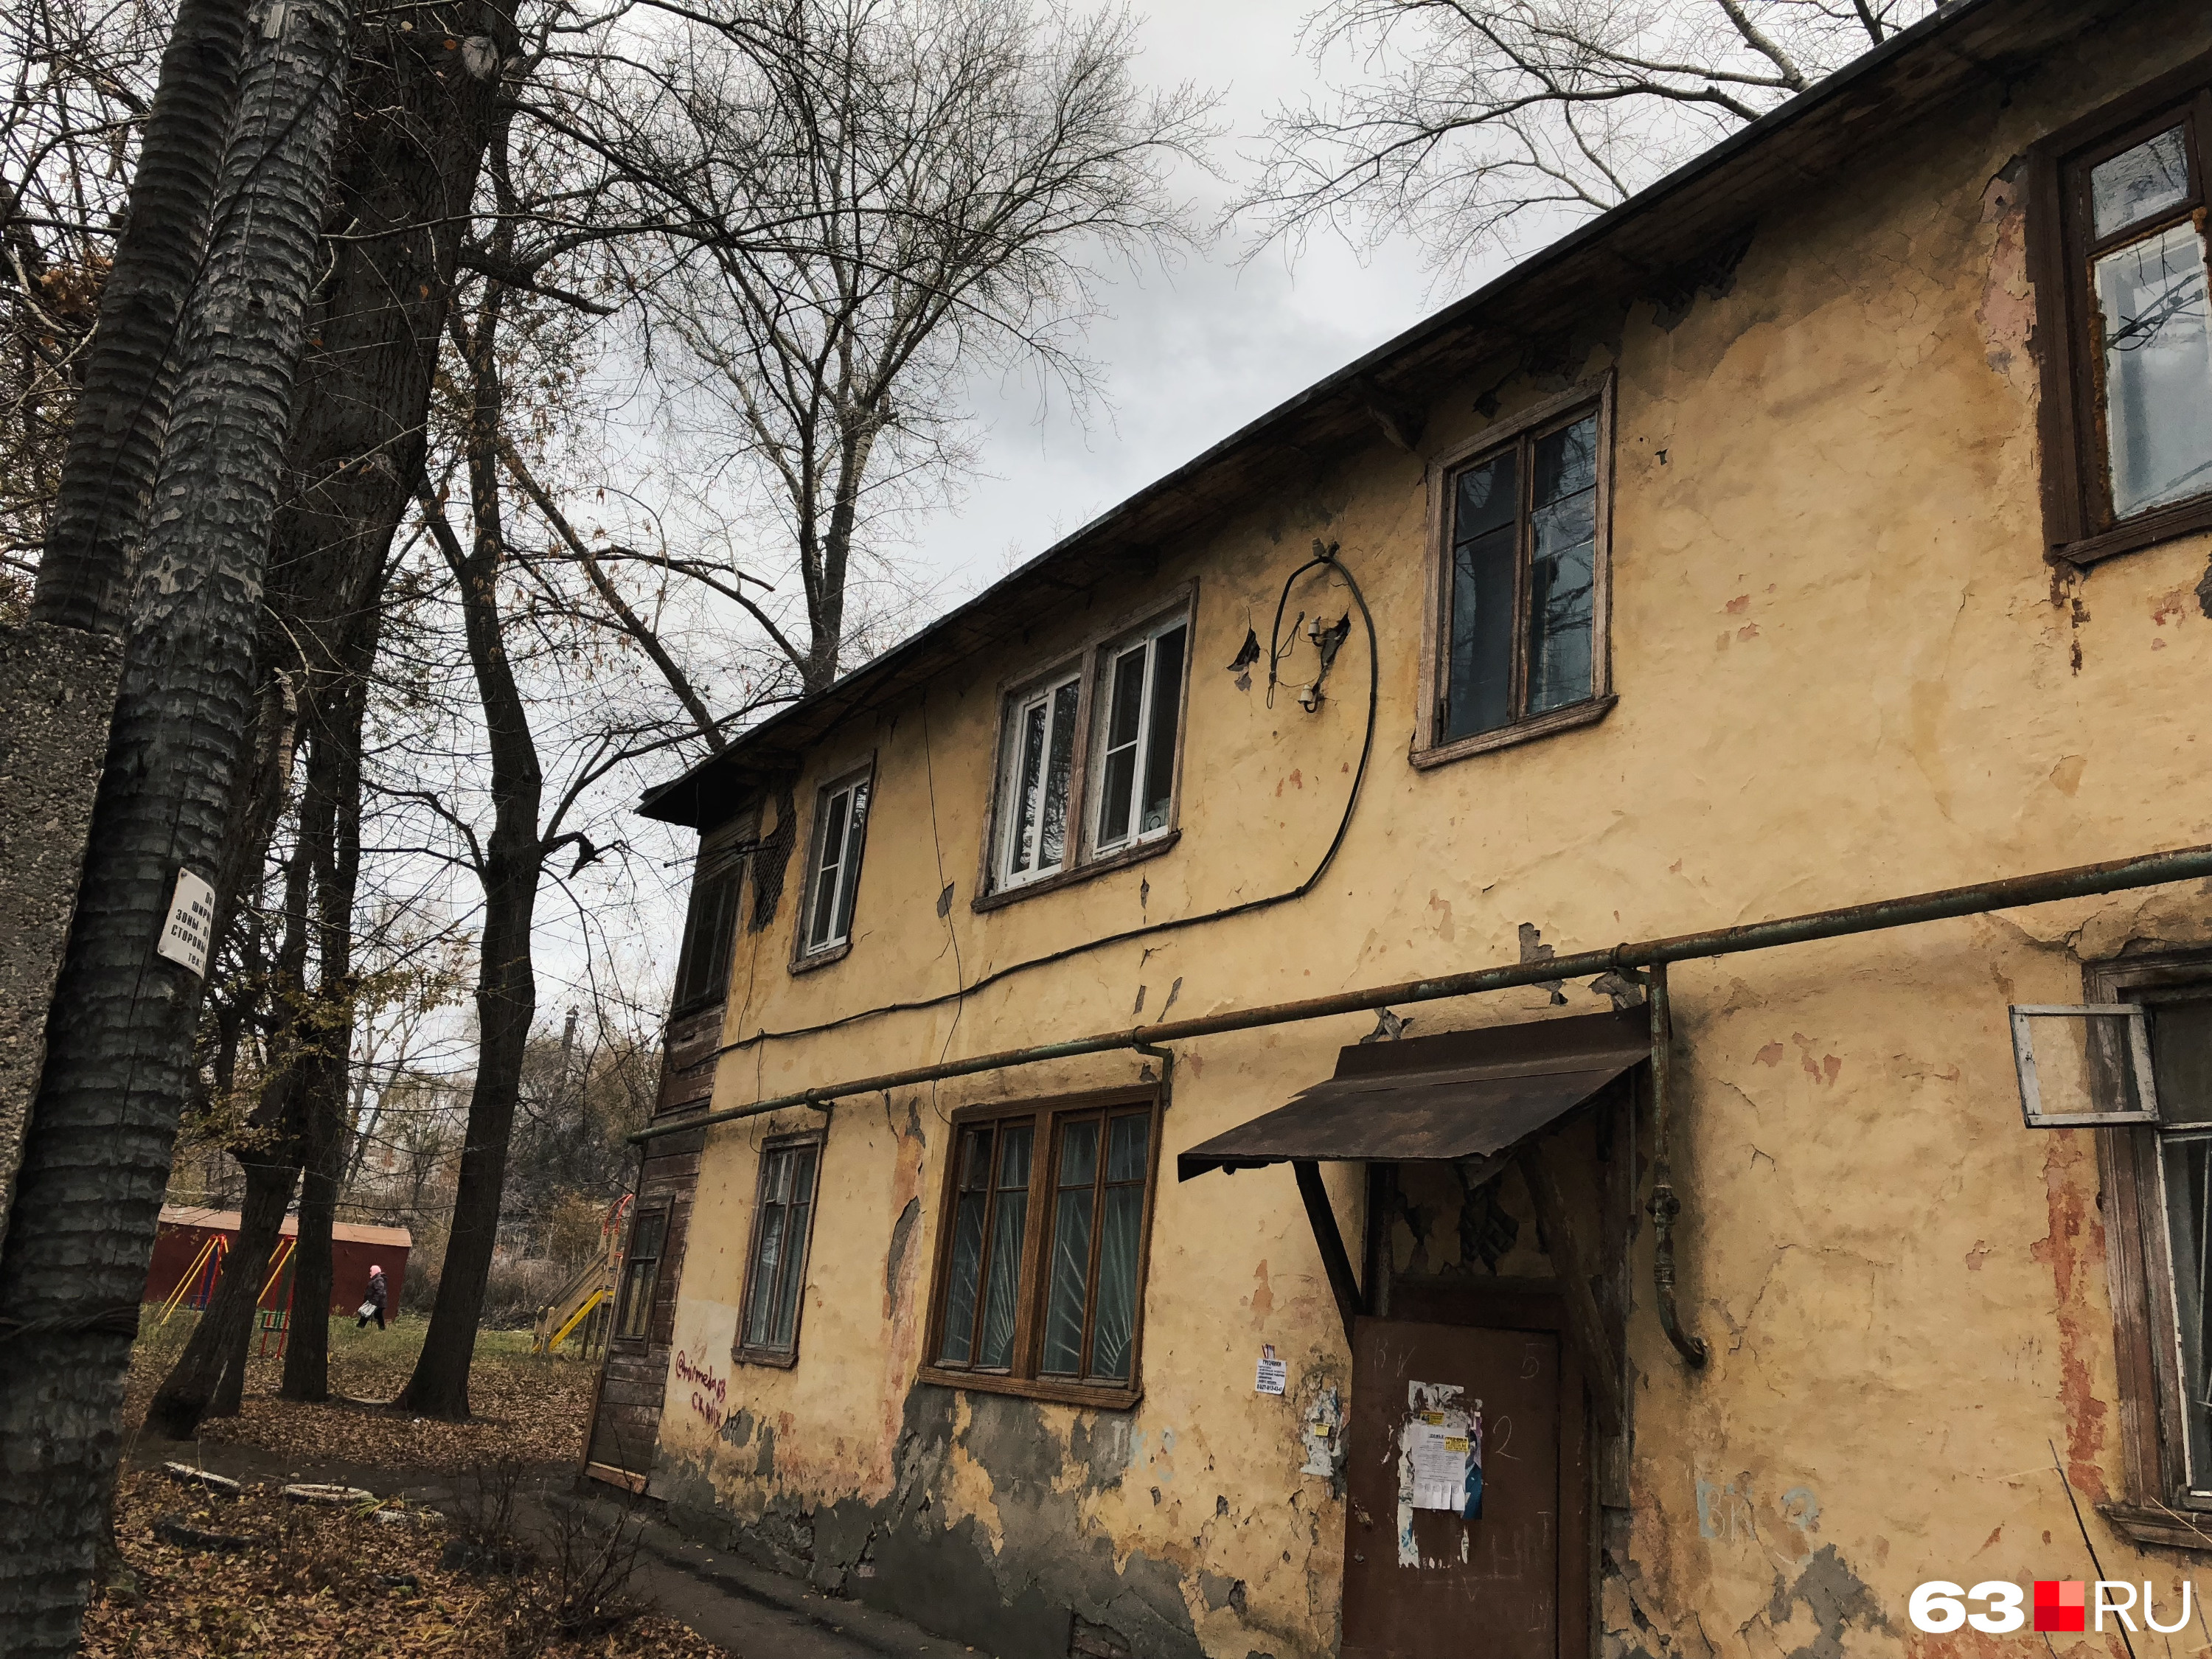 Жильцов дома на Ставропольской обещали расселить еще в 2014 году, но этого так и не произошло